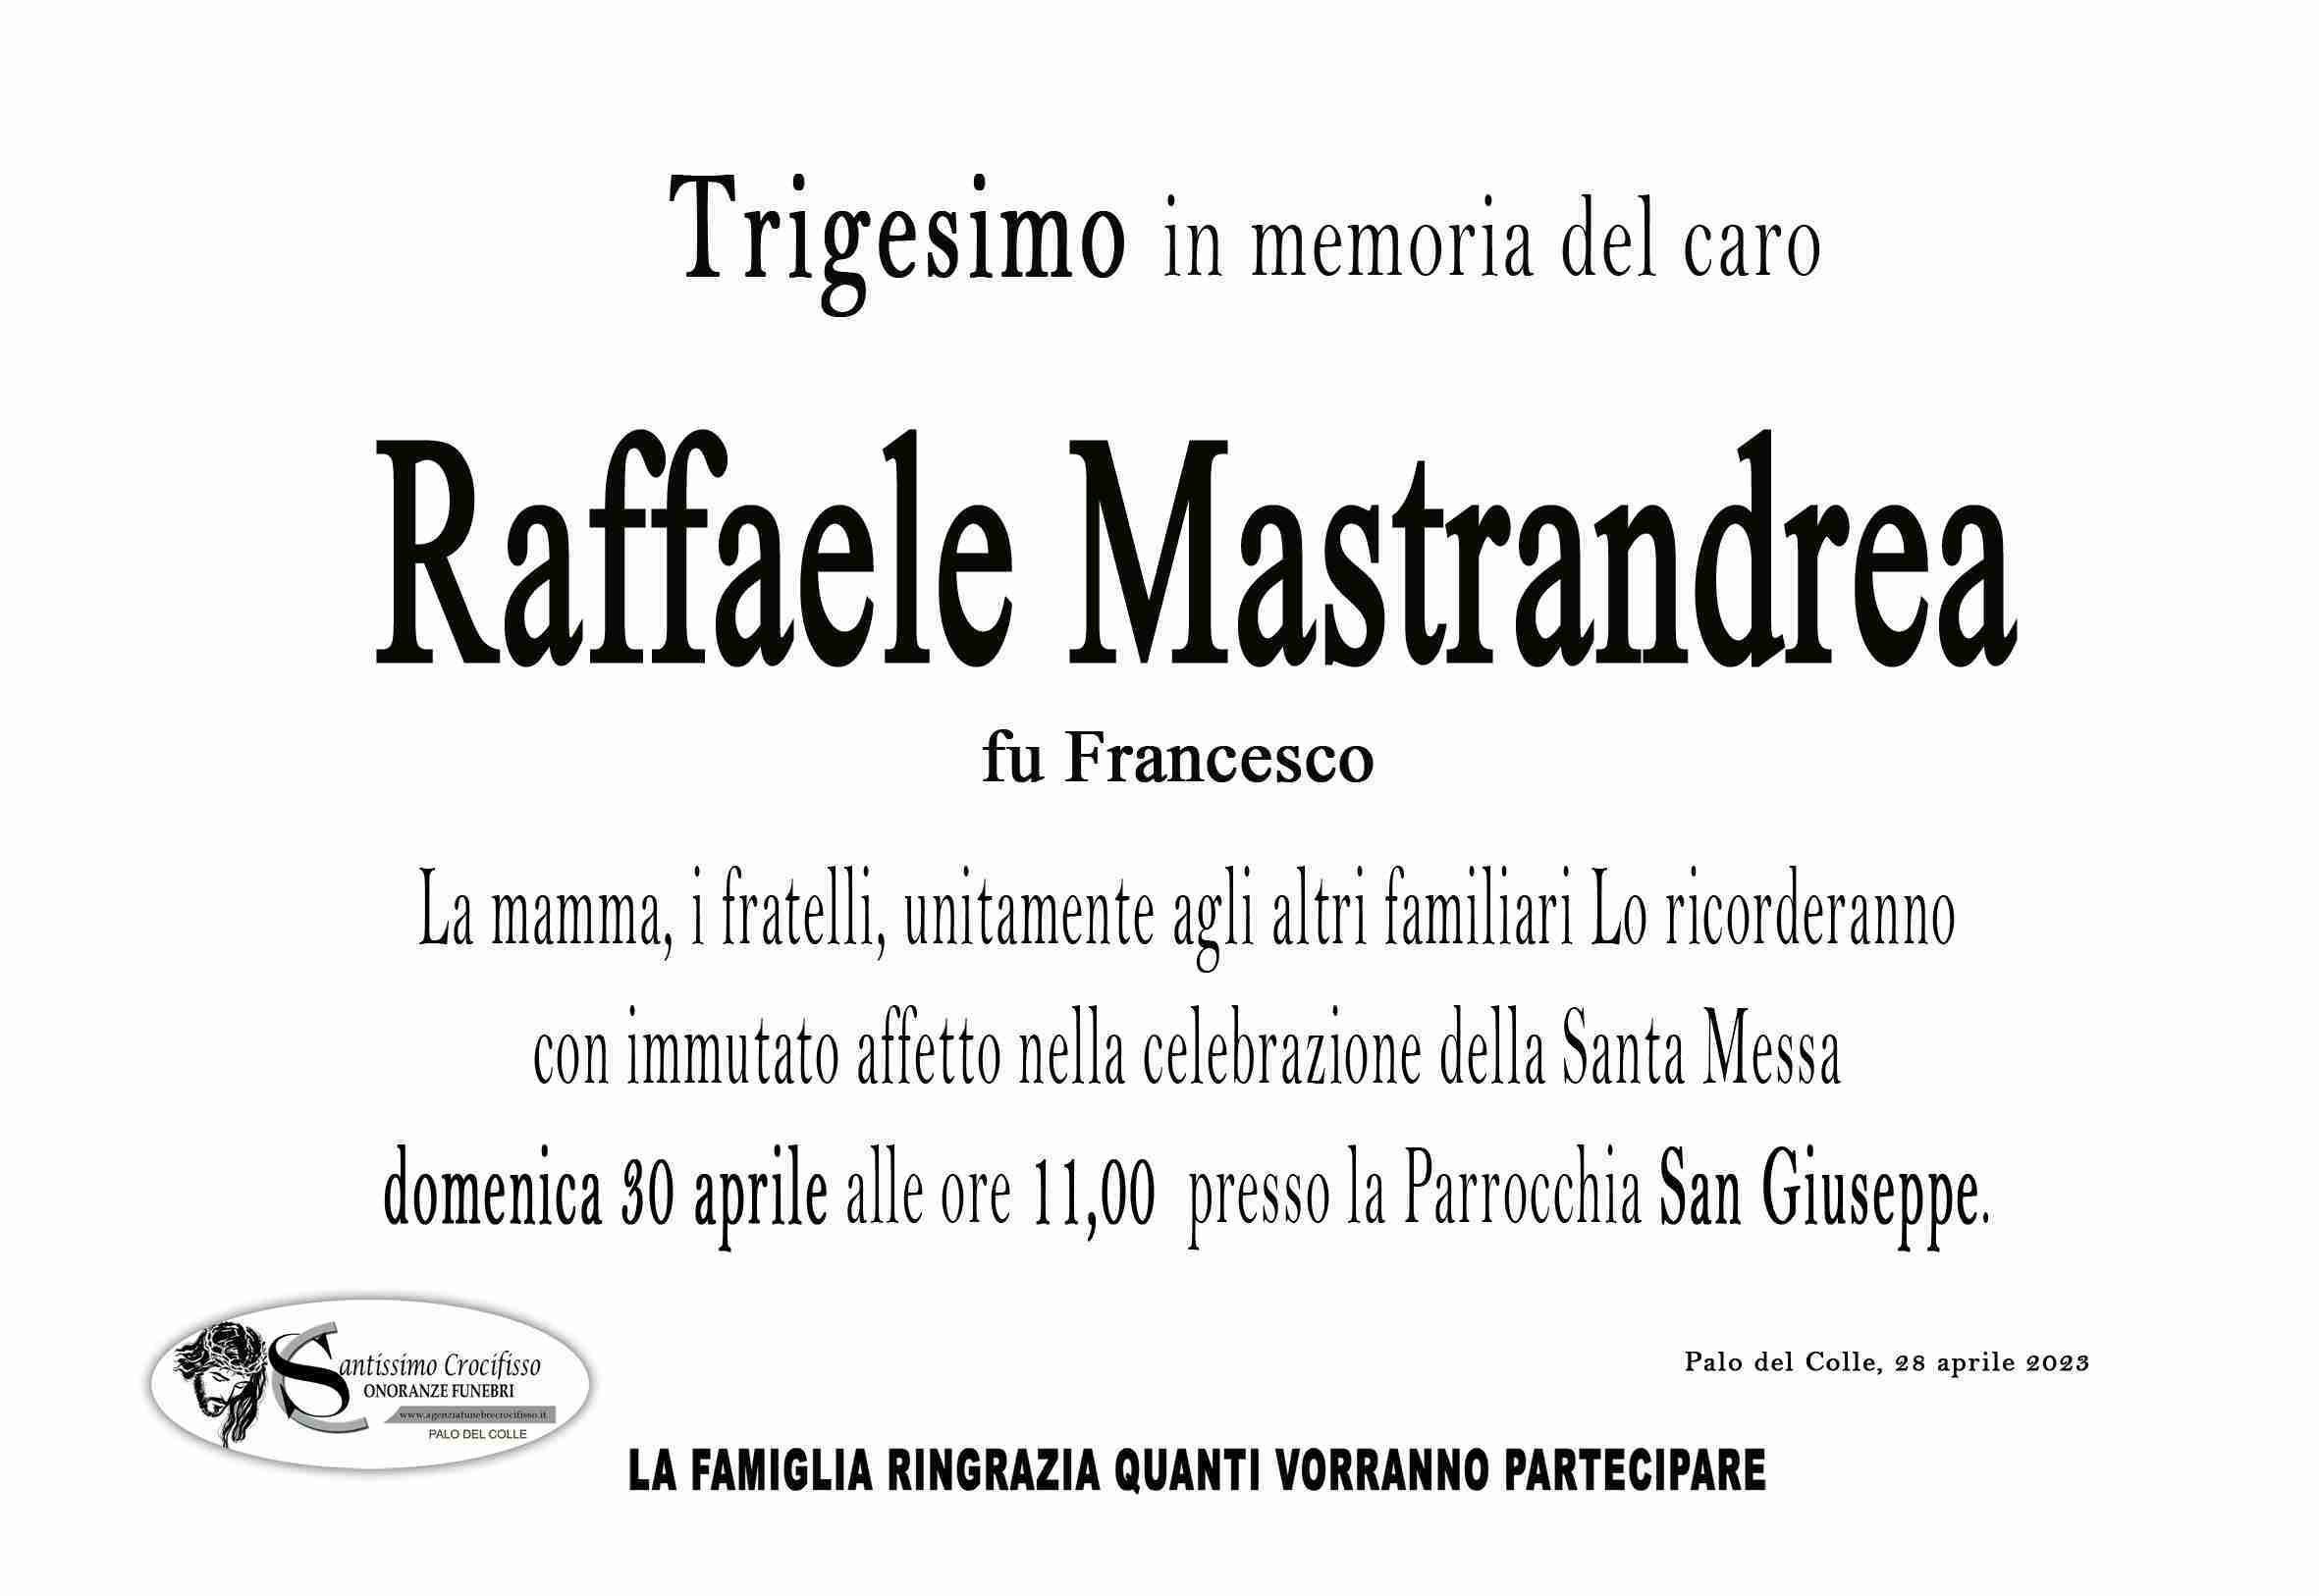 Raffaele Mastrandrea